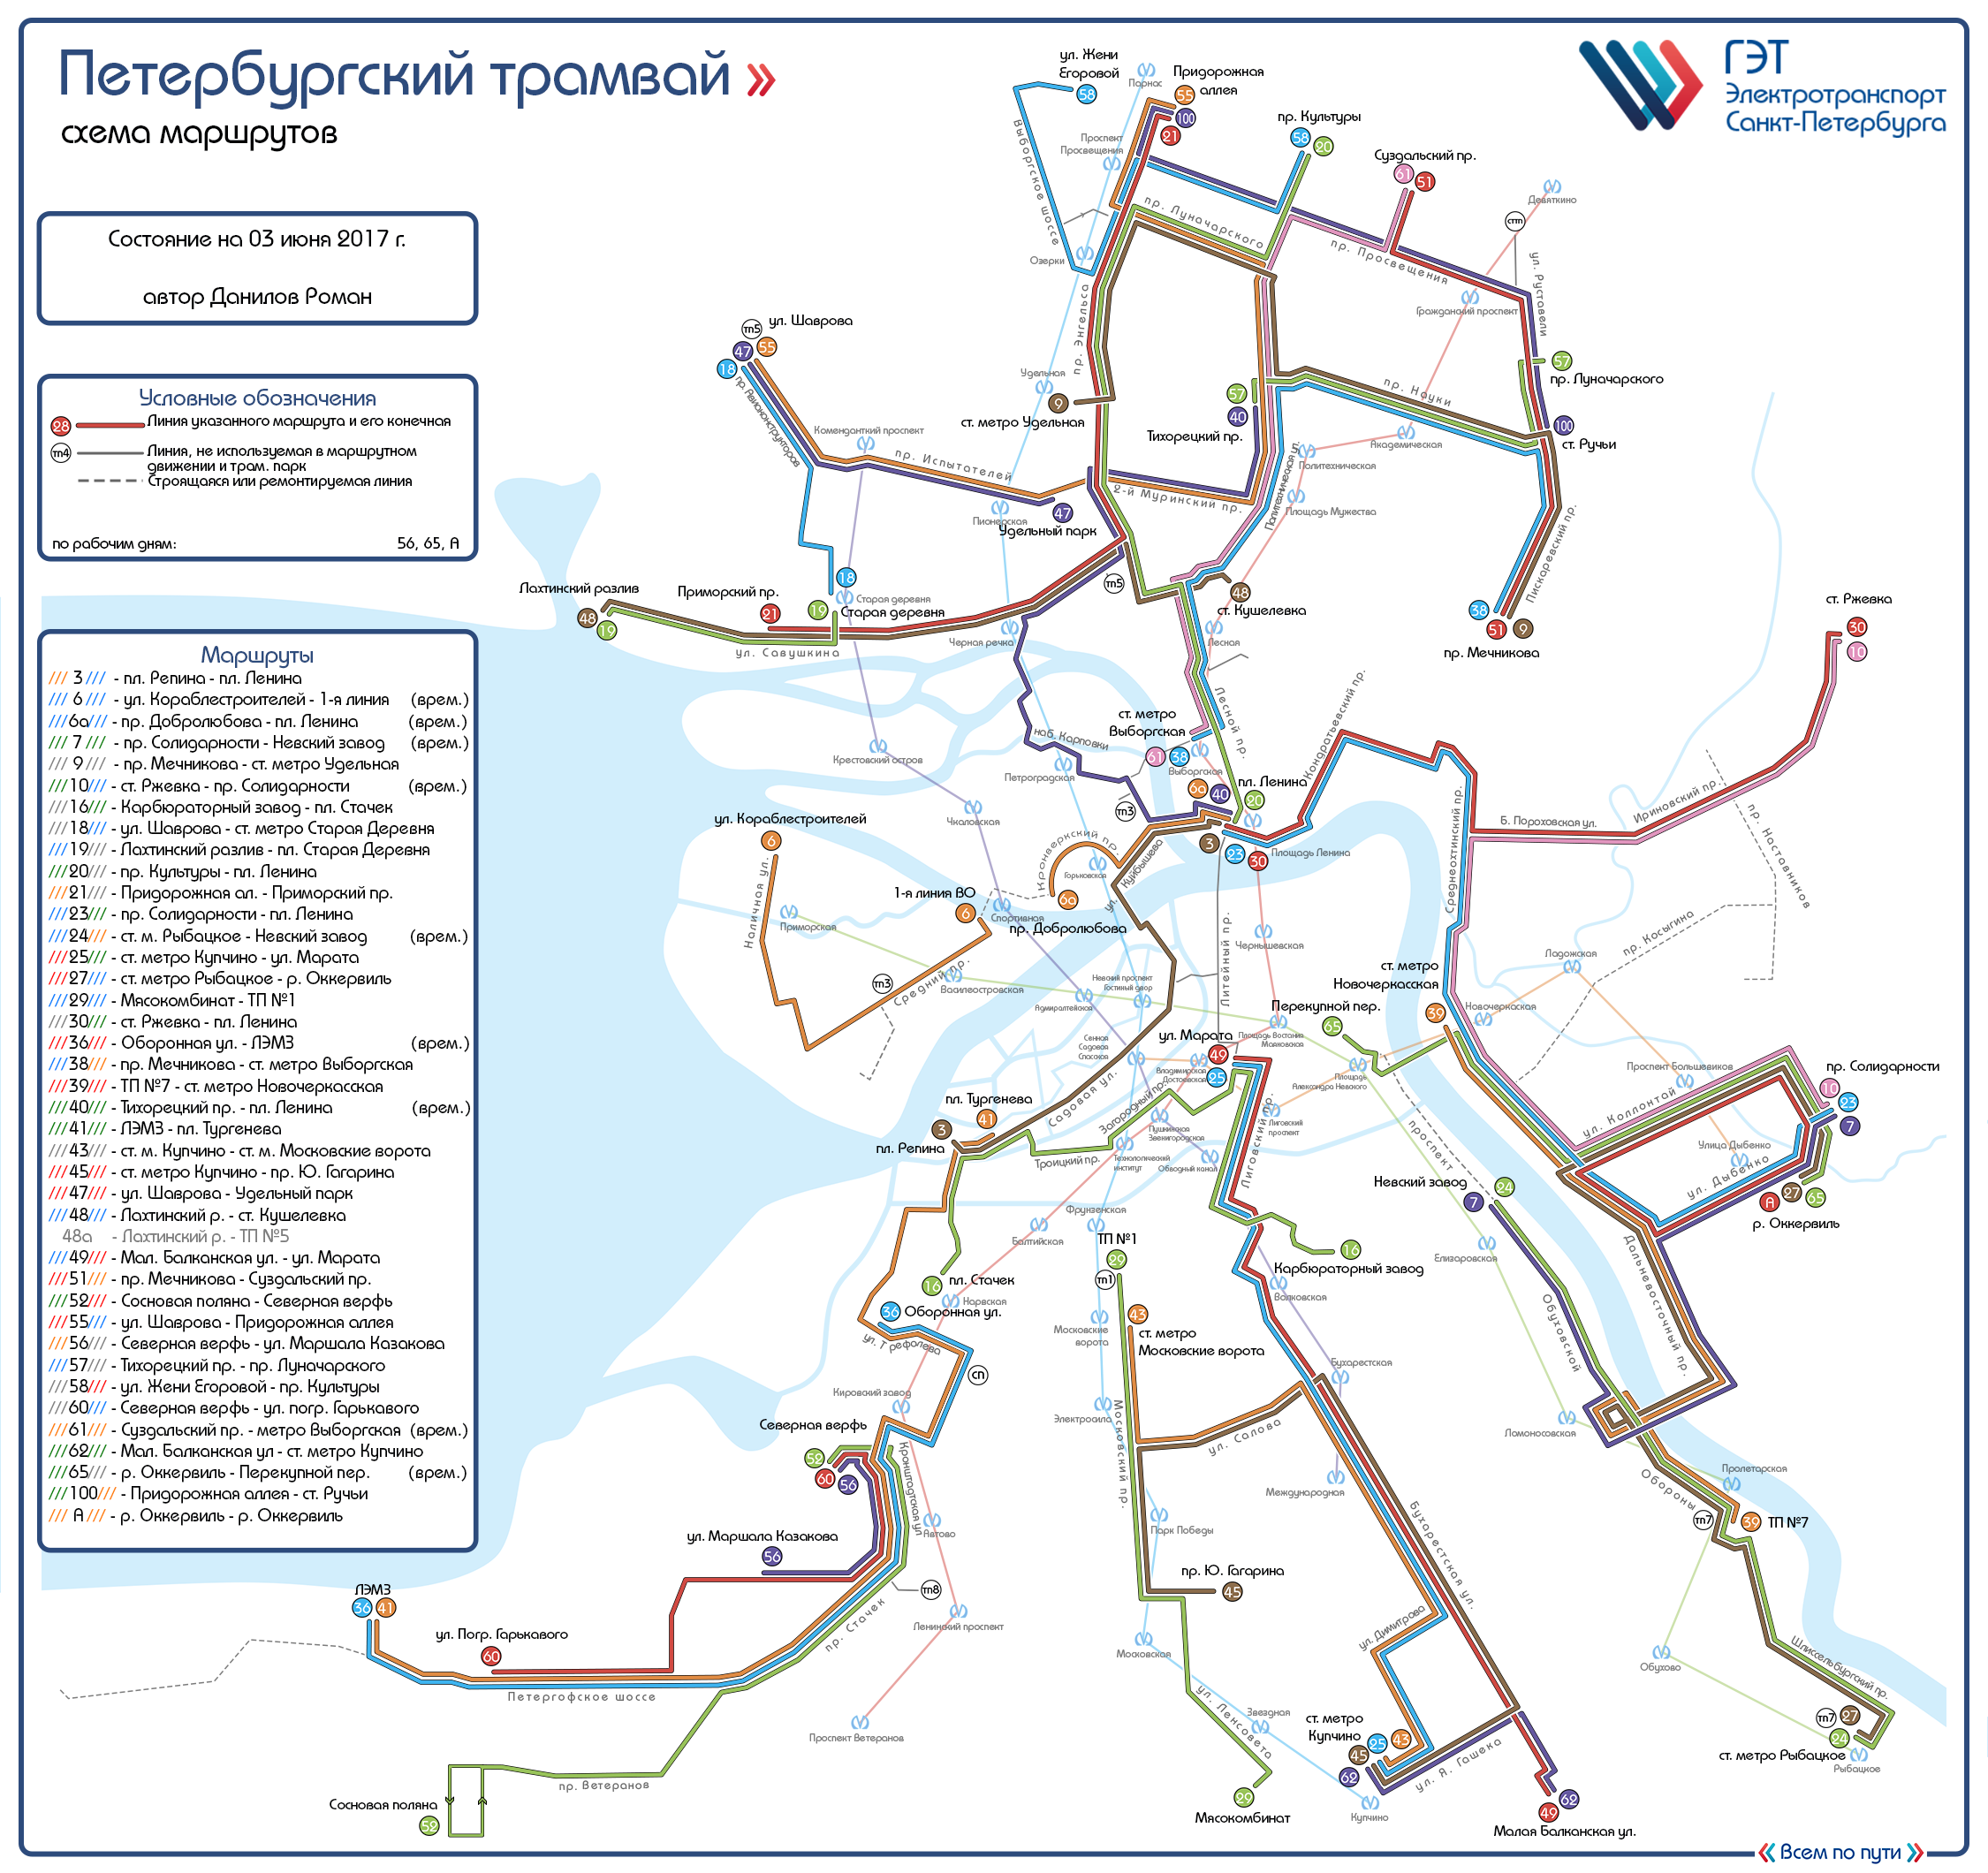 Saint-Pétersbourg — Systemwide Maps